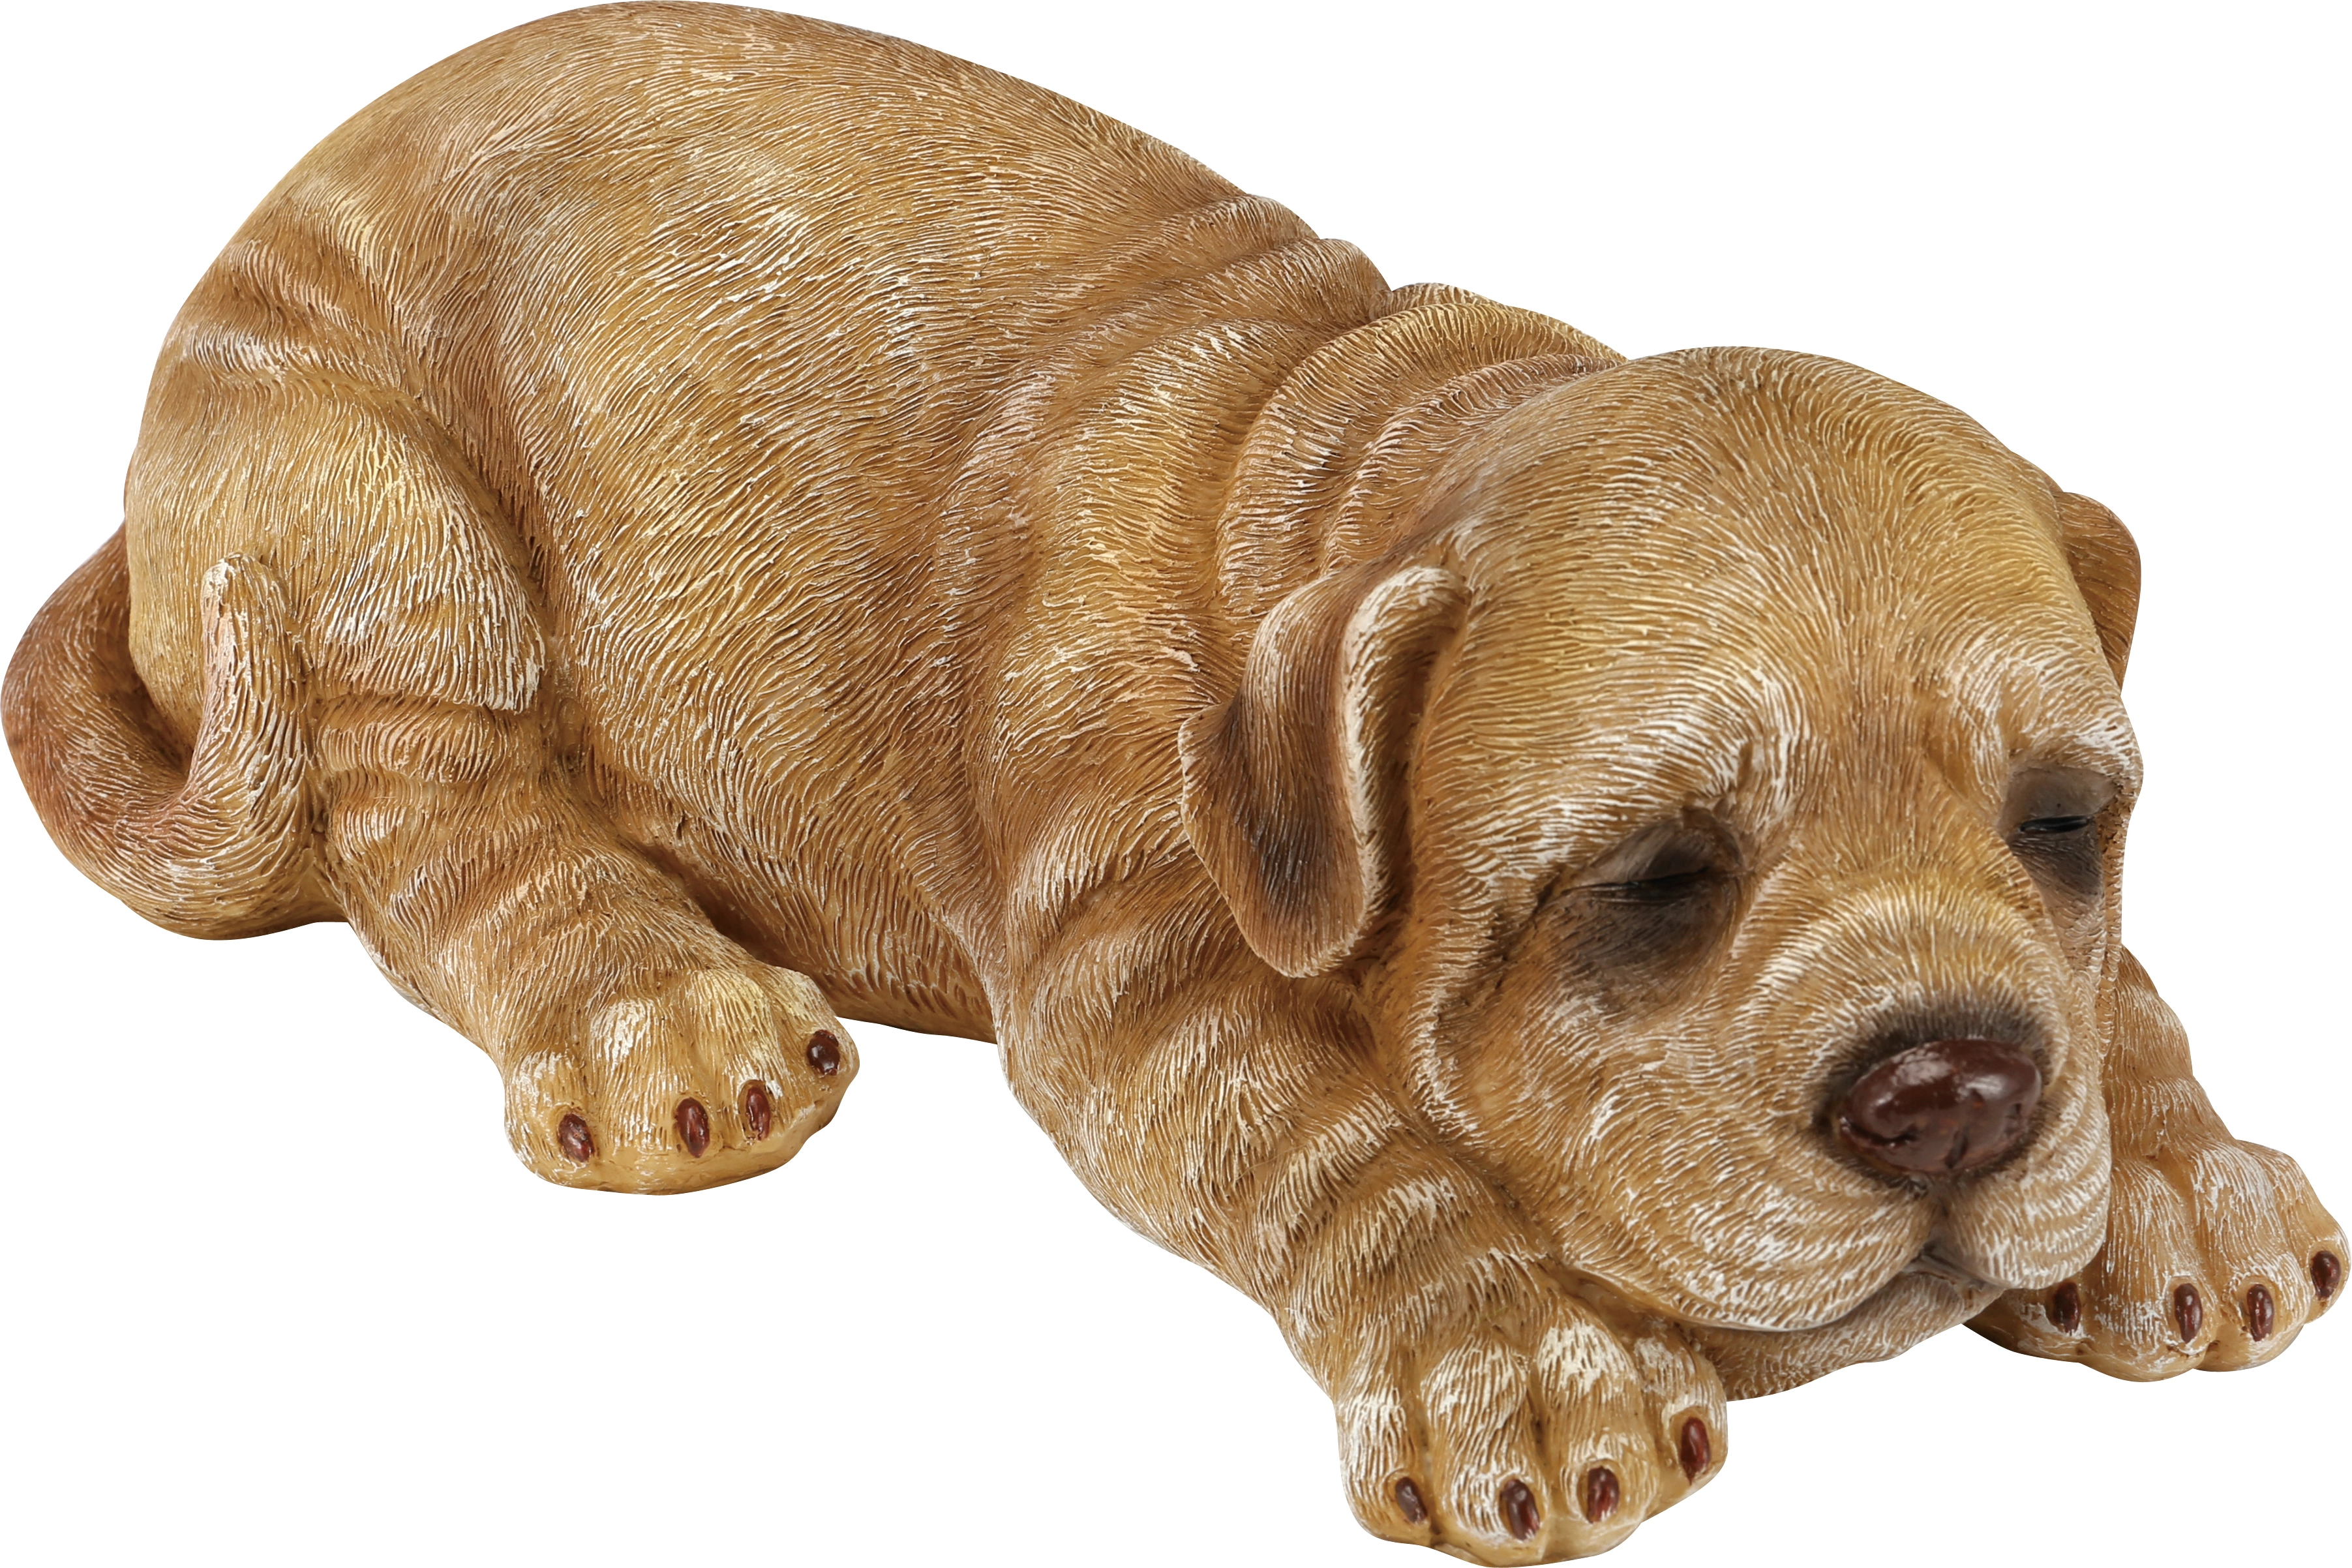 Deko-Figur Hund sitzend aus Polyresin 29 cm x 17 cm x 39 cm Weiß/Schwarz  kaufen bei OBI